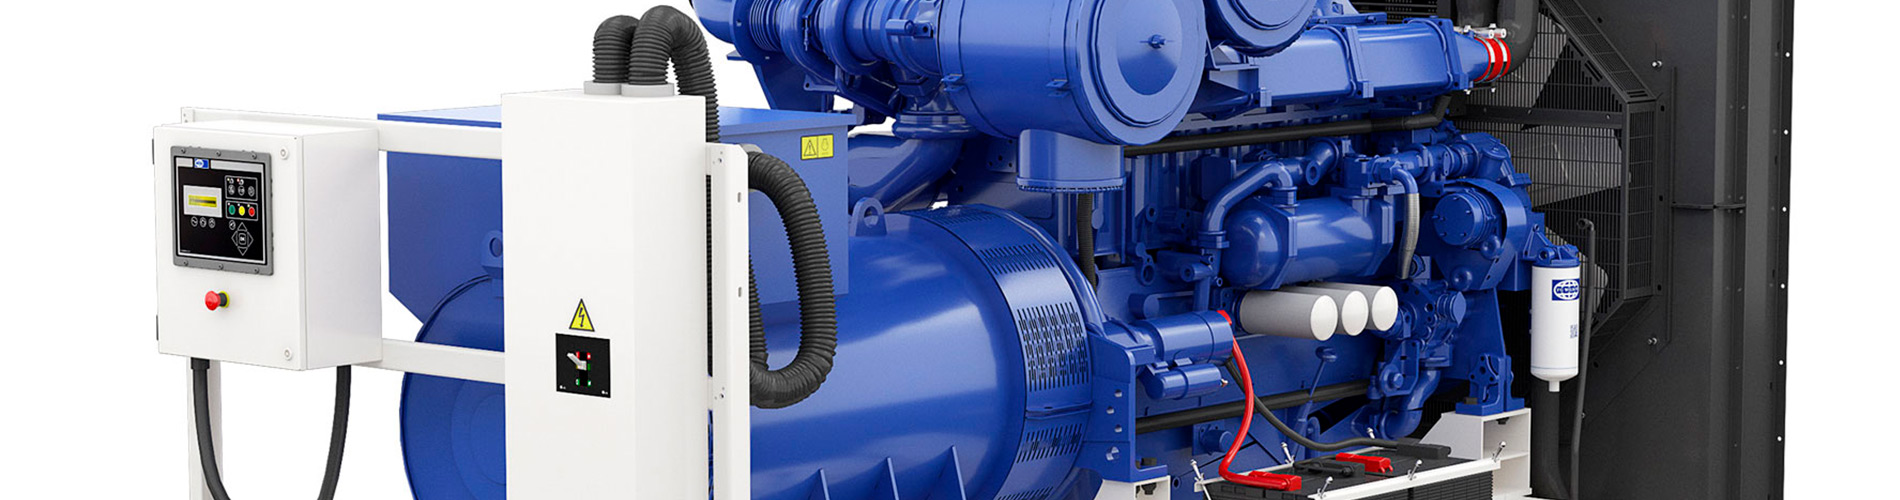 Компания «РентЮгСтрой» предлагает доставку дизельных генераторов любого типа 